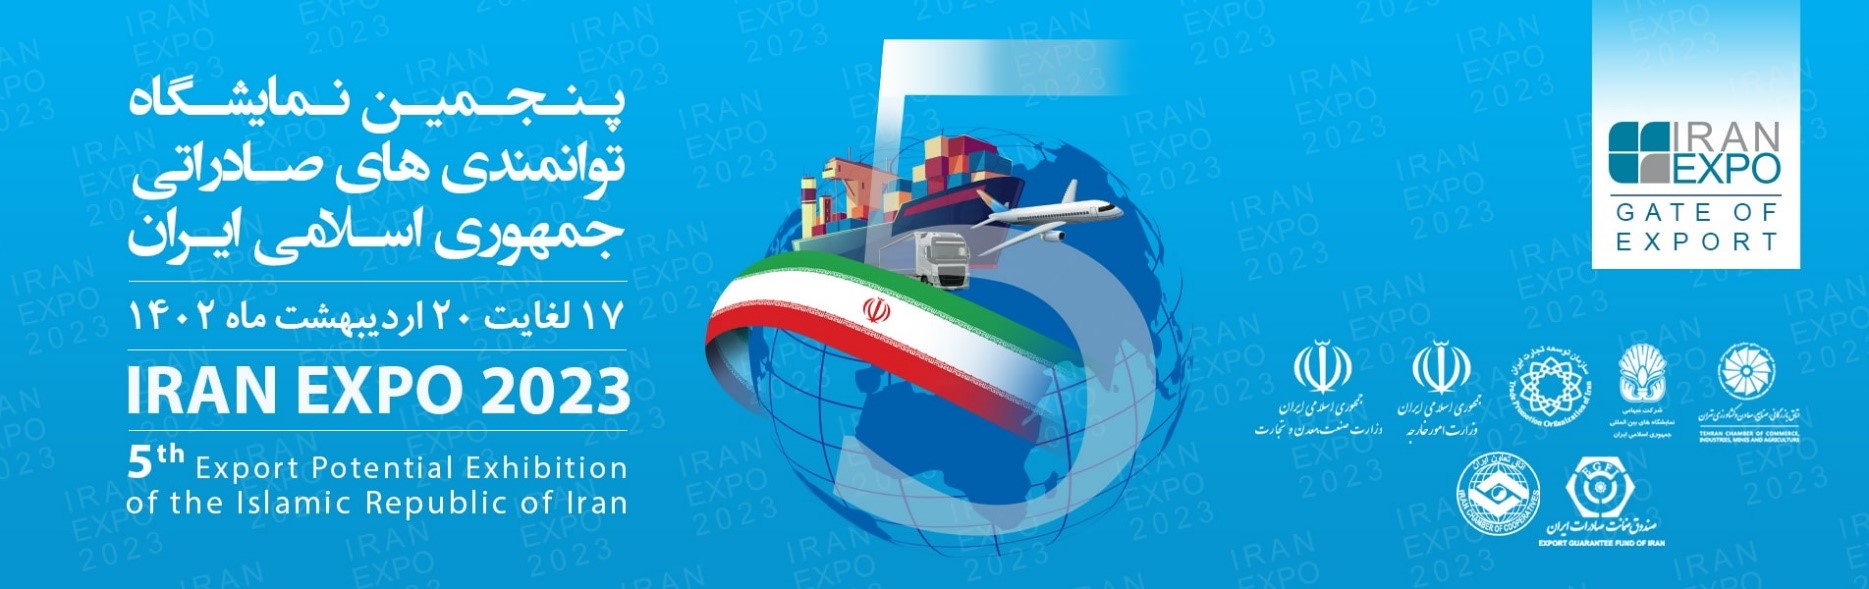 Iran expo 2023 - Iran EXPO 2023 (May 7th to 10th)